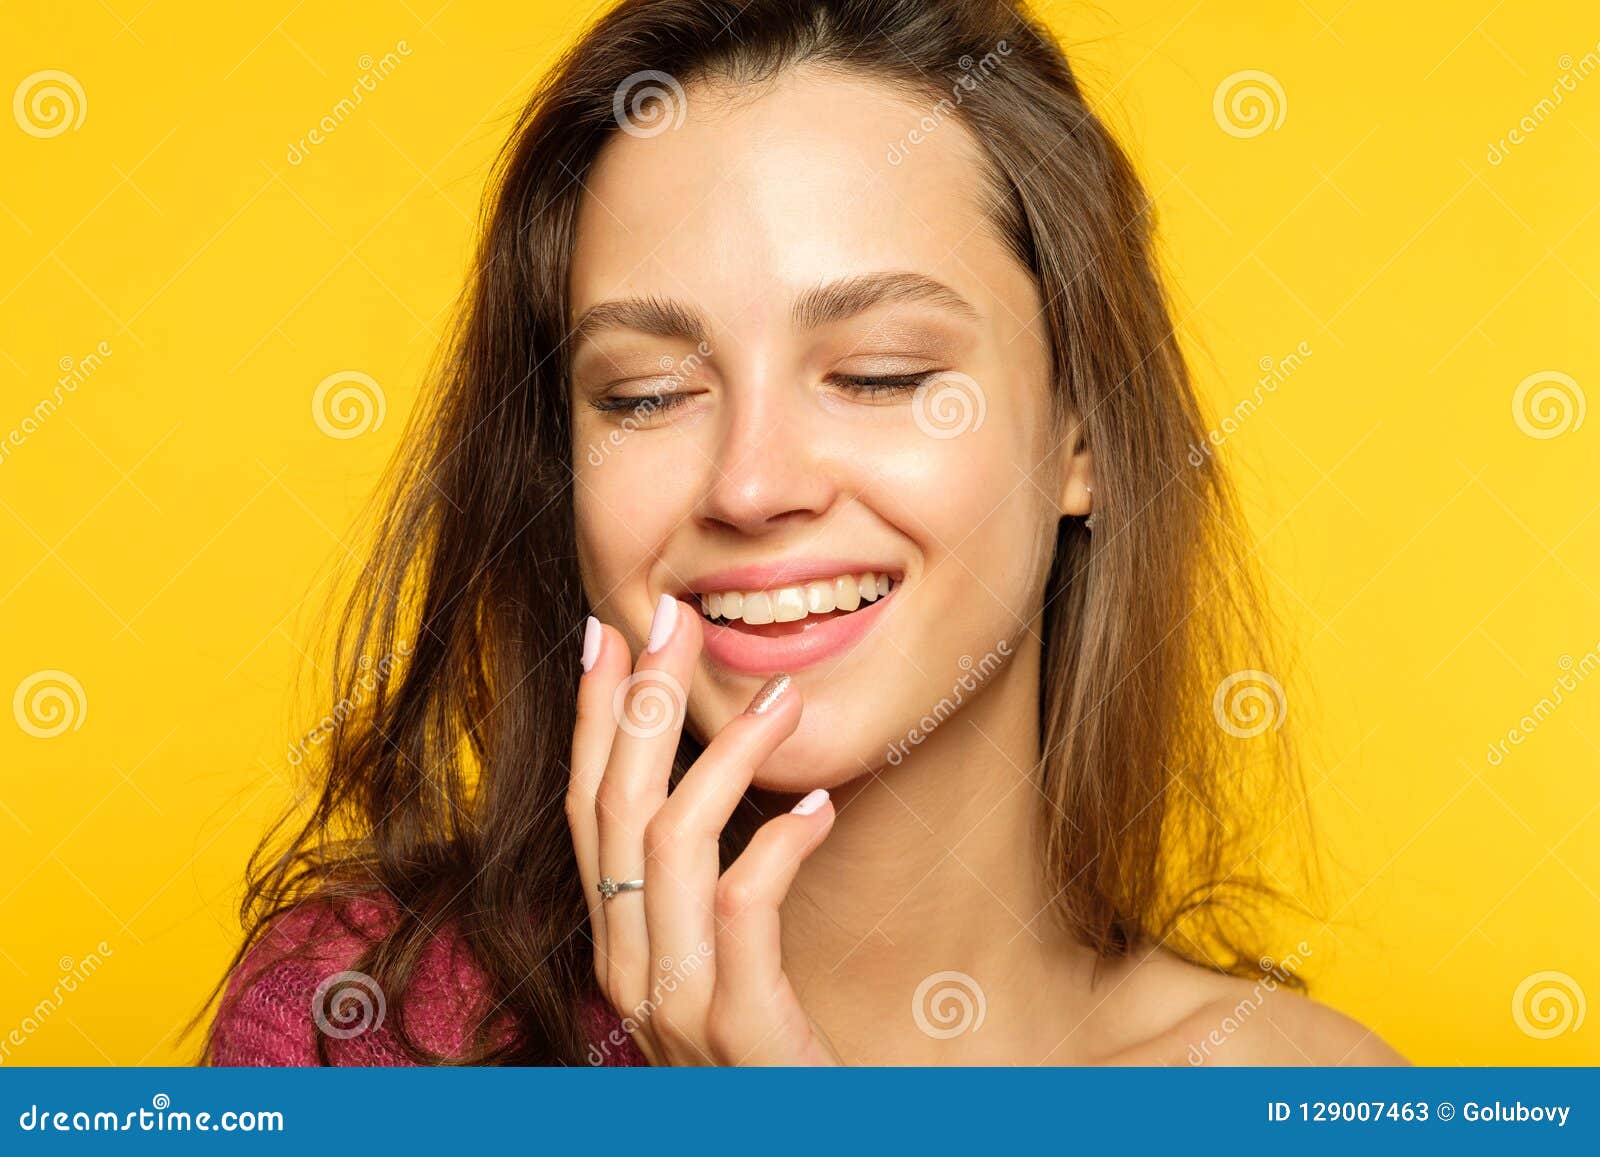 Emotion Face Happy Joy Thrilled Girl Beaming Smile Stock Image - Image ...